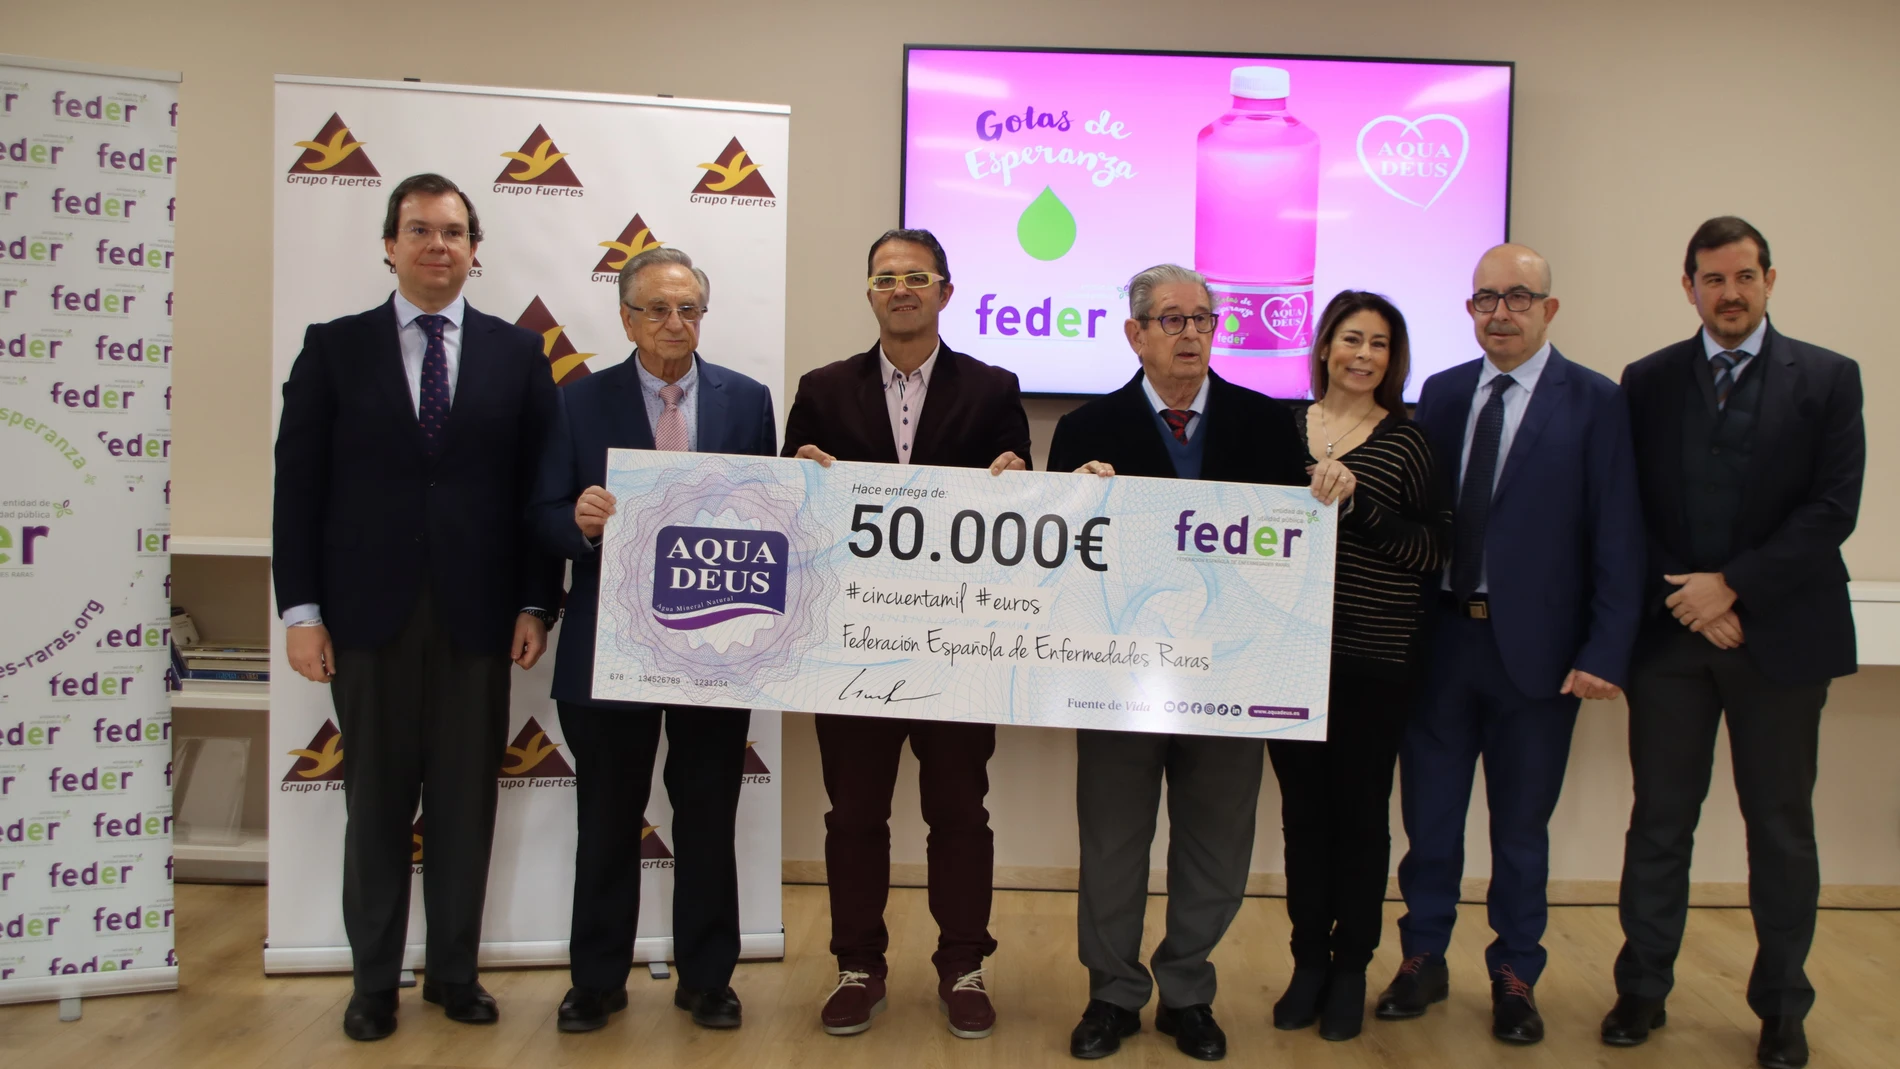 Foto de la entrega del cheque de 50.000 euros a Feder